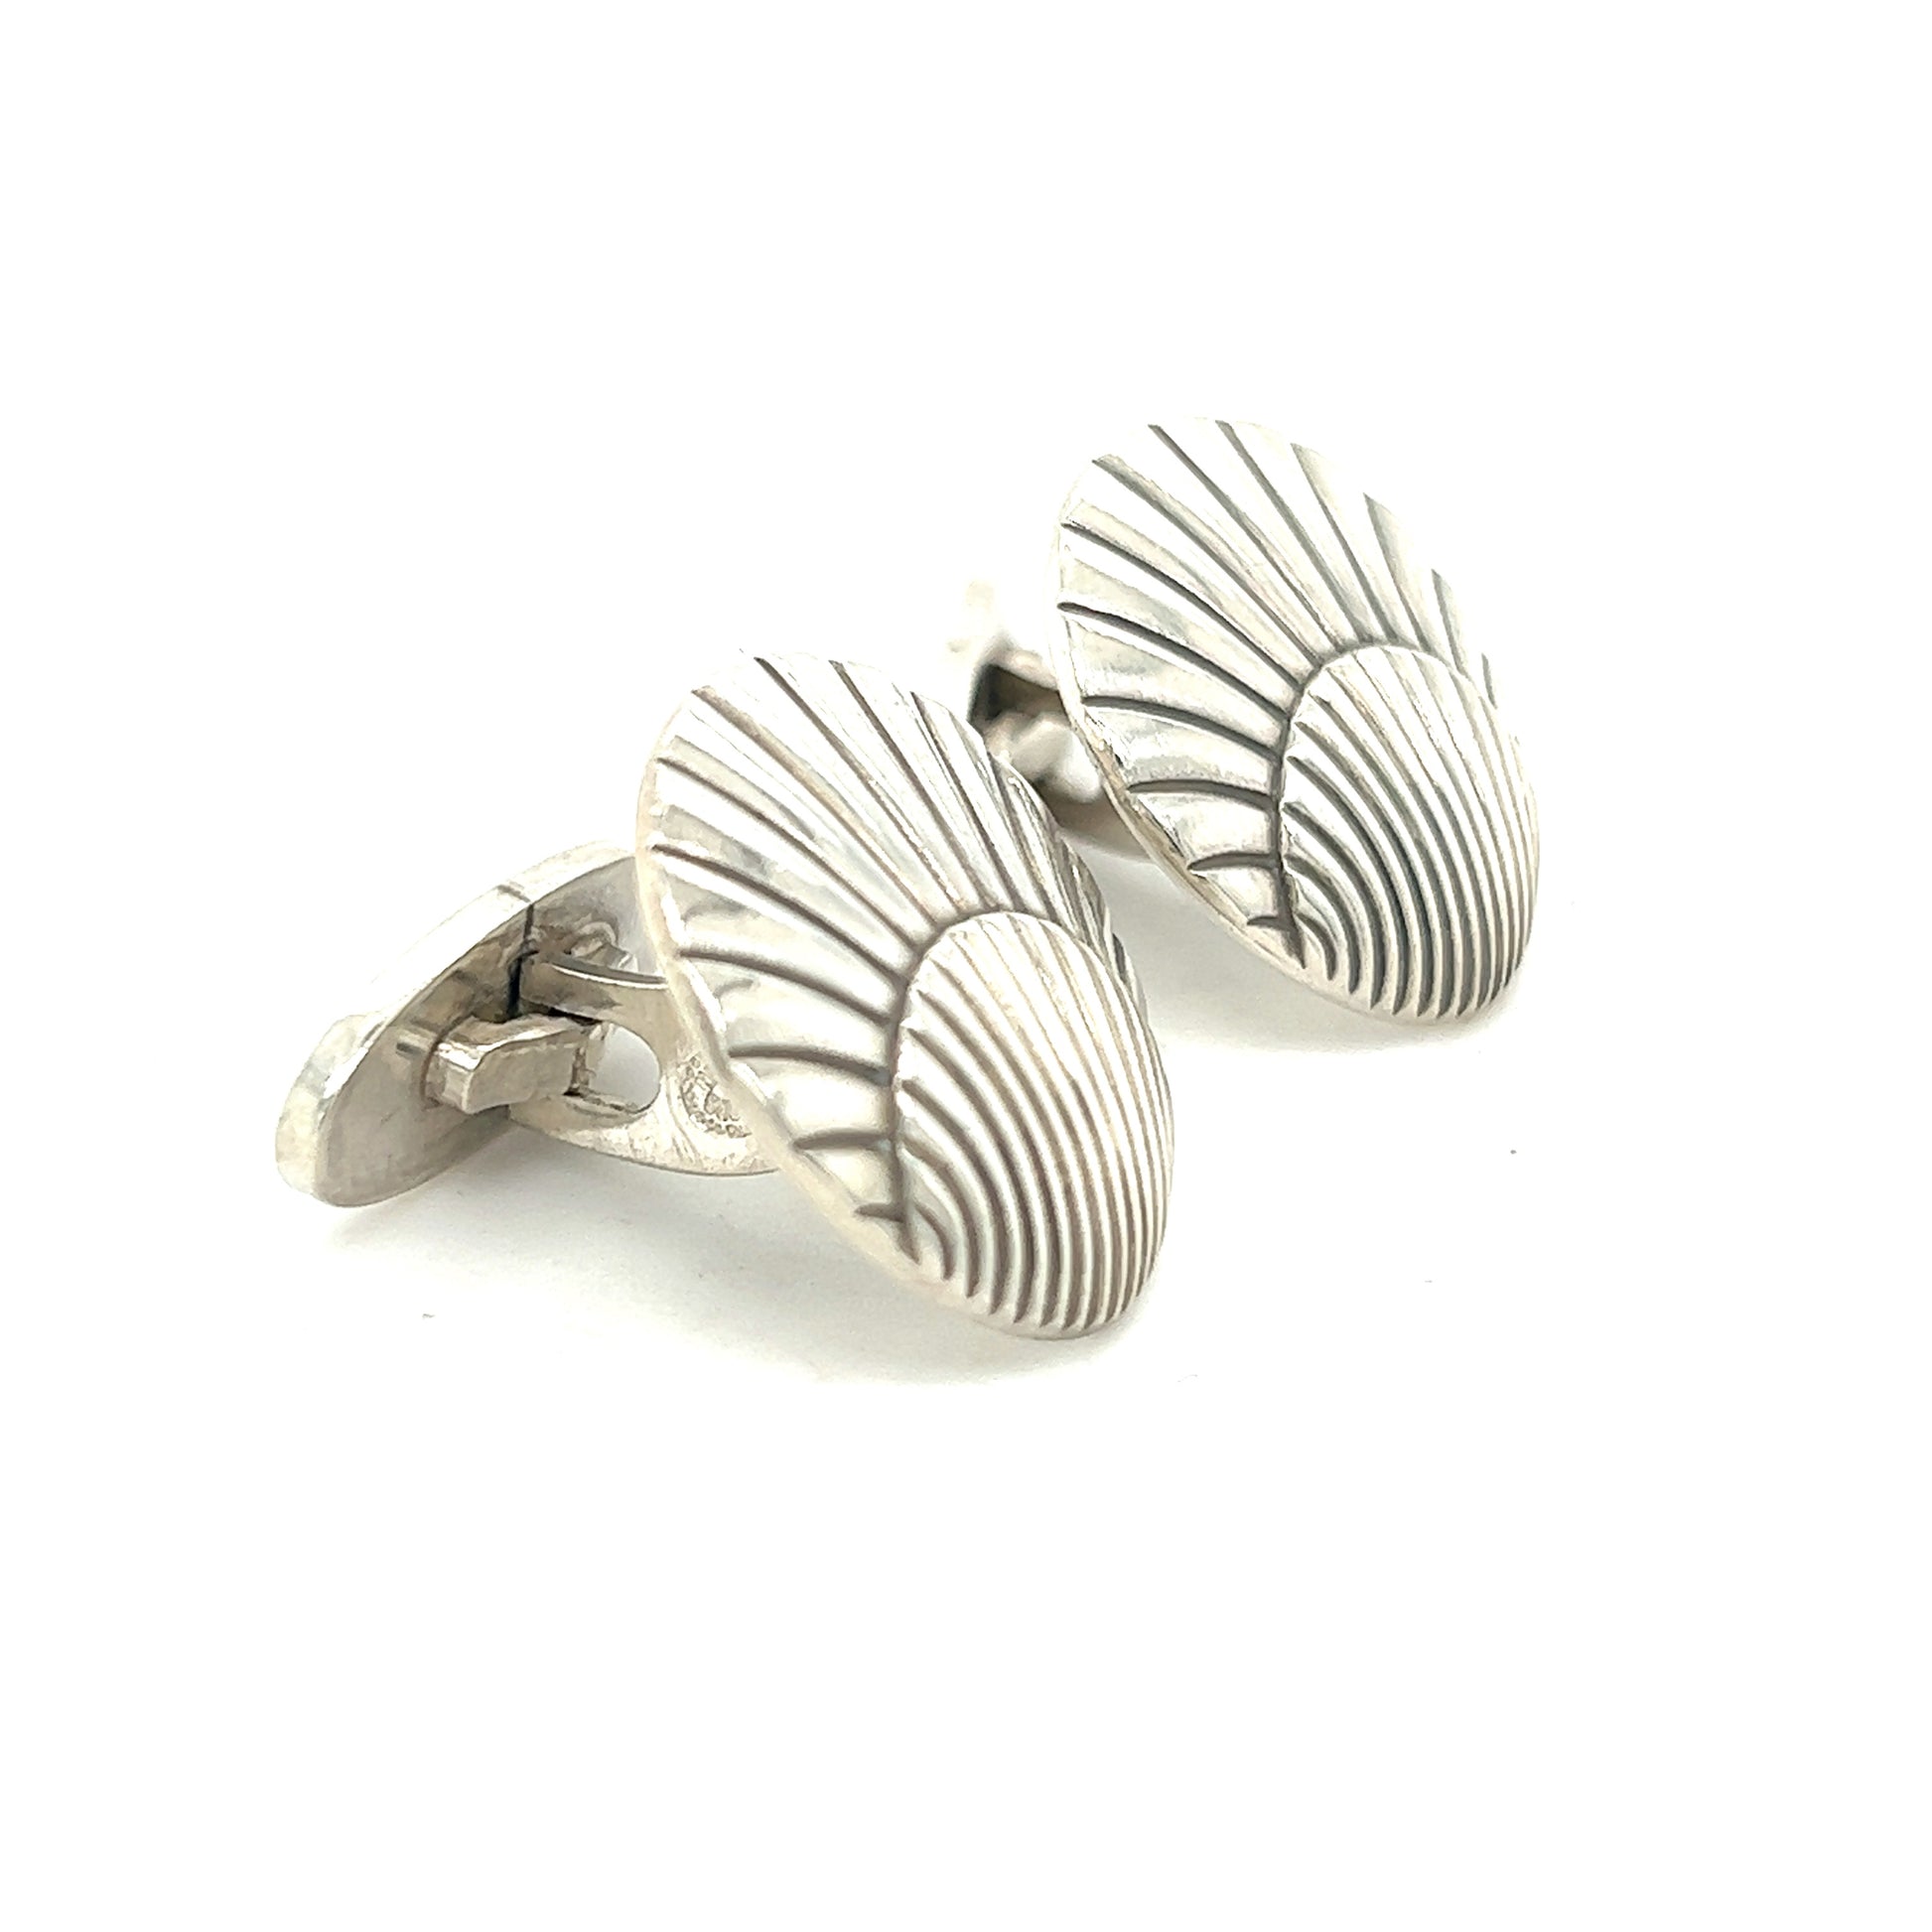 Georg Jensen Authentic Estate Seashell Cufflinks Silver GJ14 - Certified Fine Jewelry